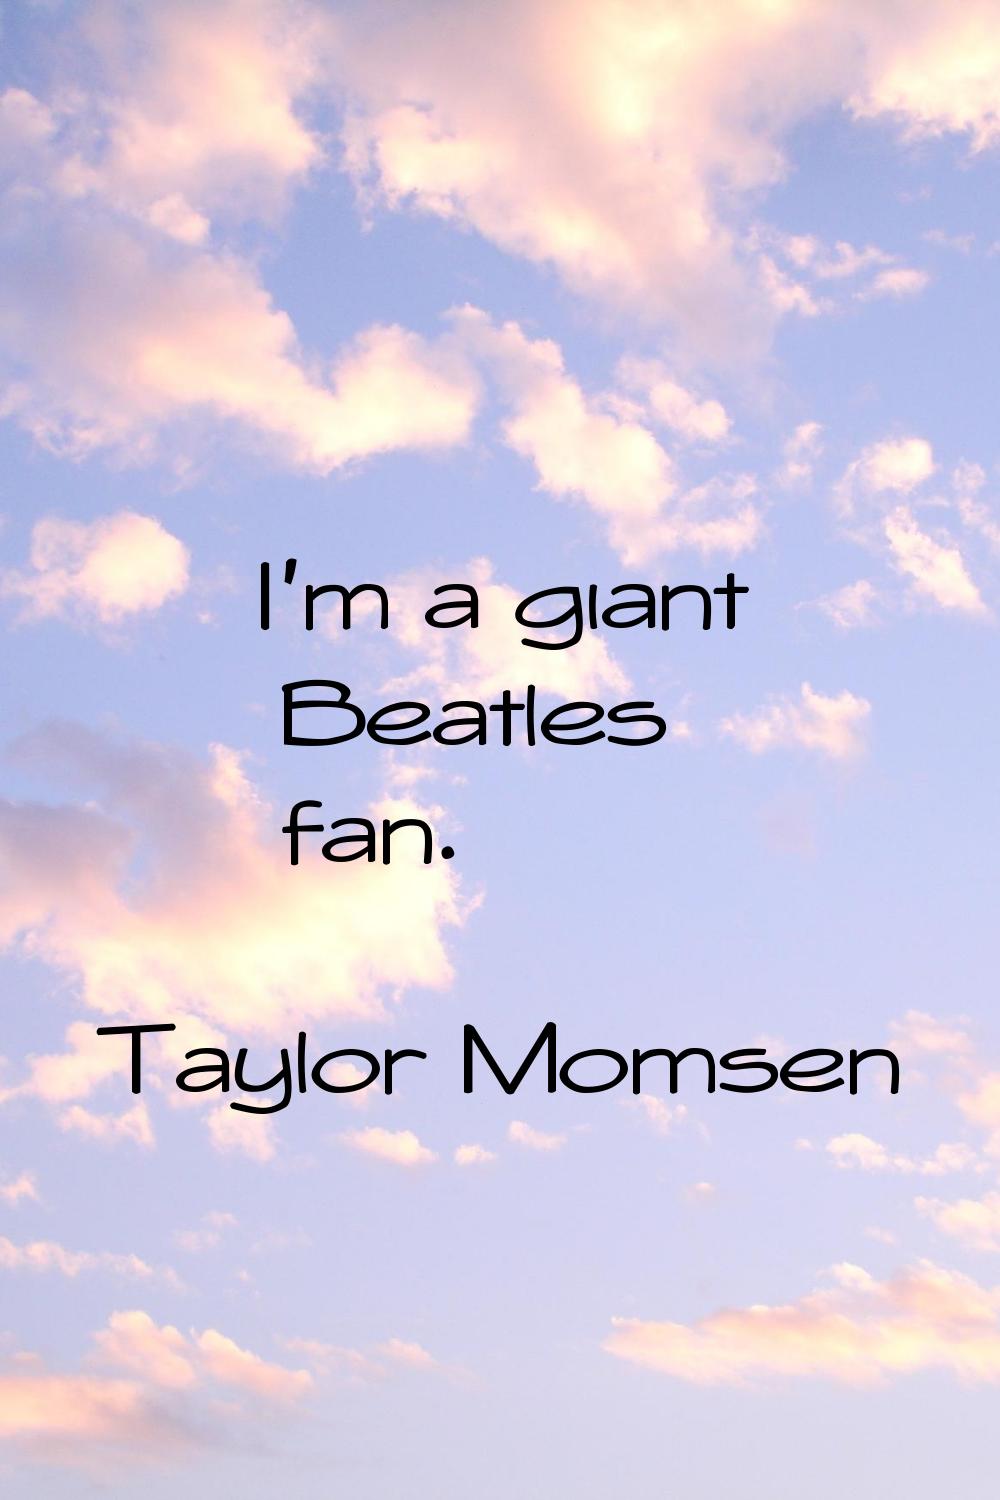 I'm a giant Beatles fan.